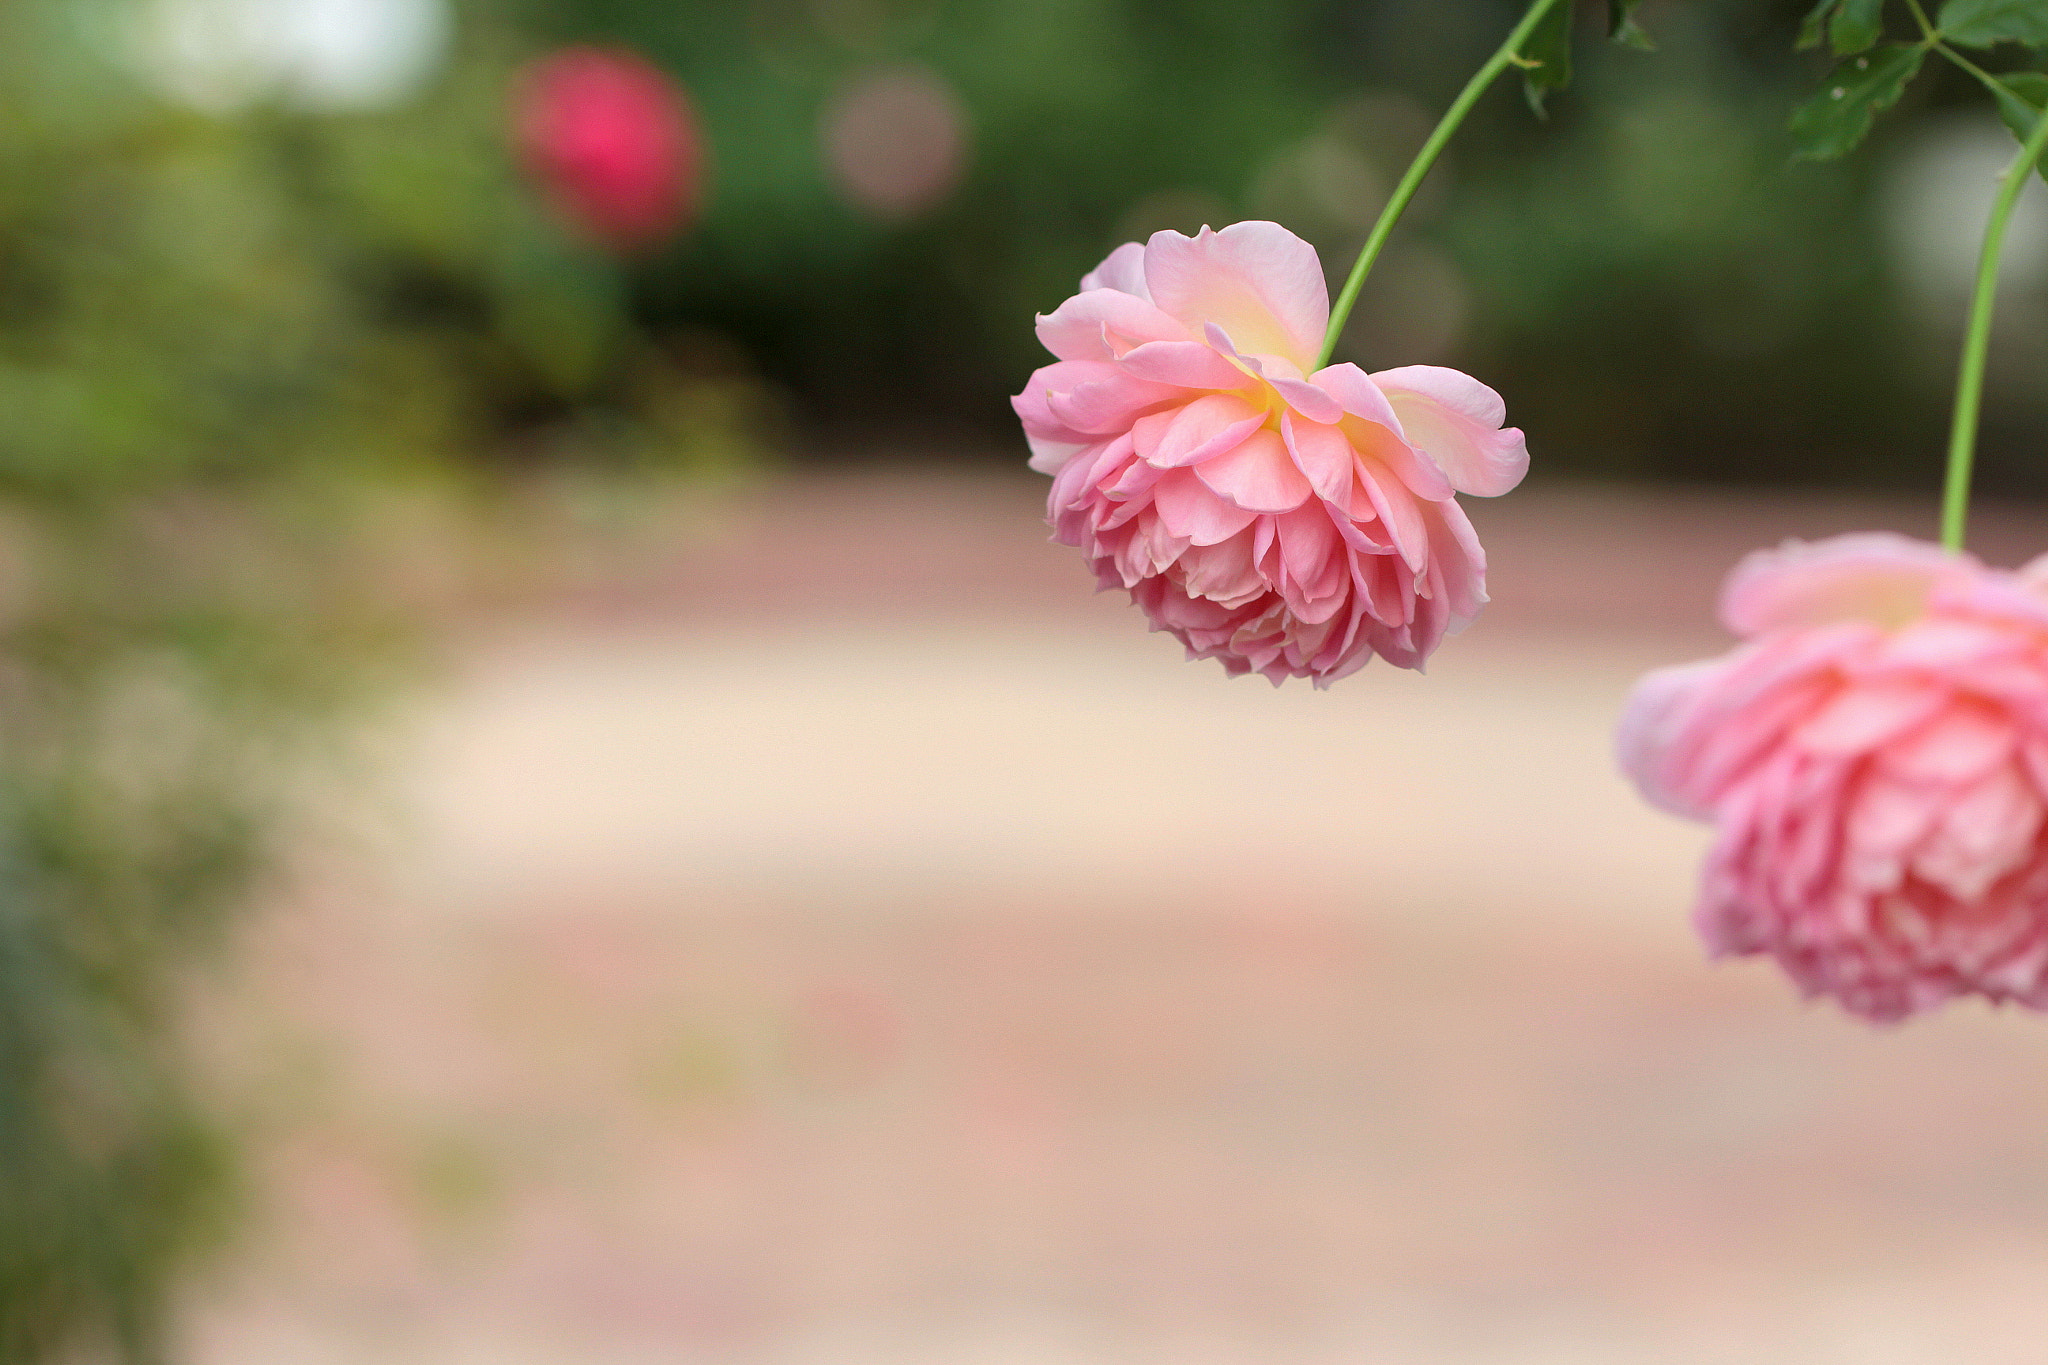 Canon EOS 650D (EOS Rebel T4i / EOS Kiss X6i) sample photo. Rose garden photography